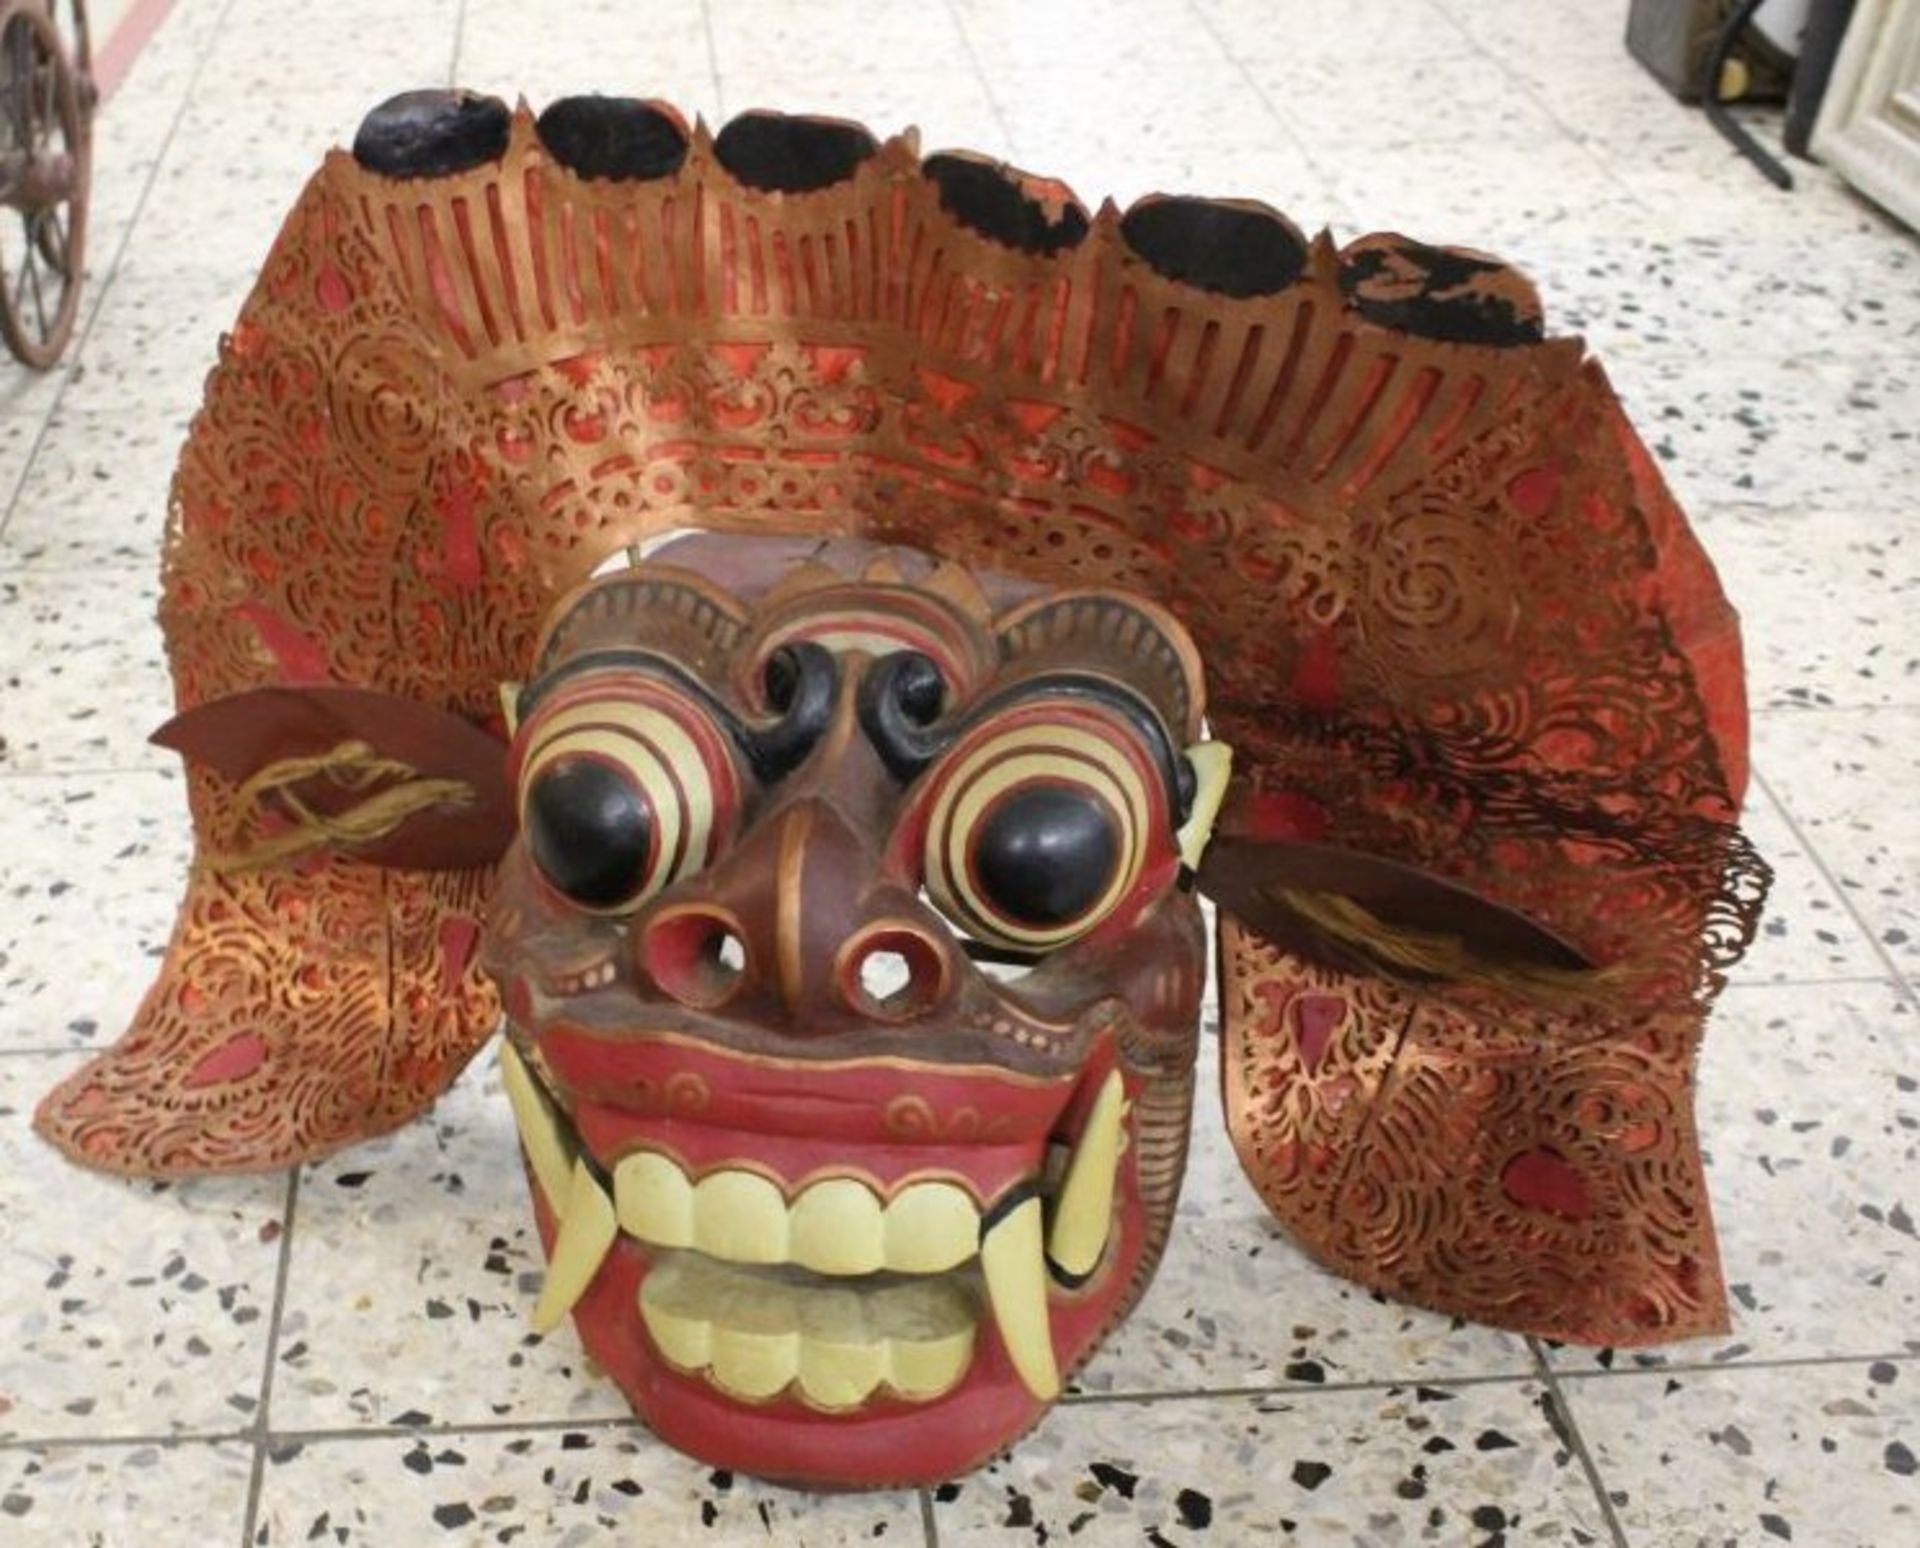 gr. Maske, Bali, Holz farbig gefasst, 57 x 37cm.- - -22.61 % buyer's premium on the hammer